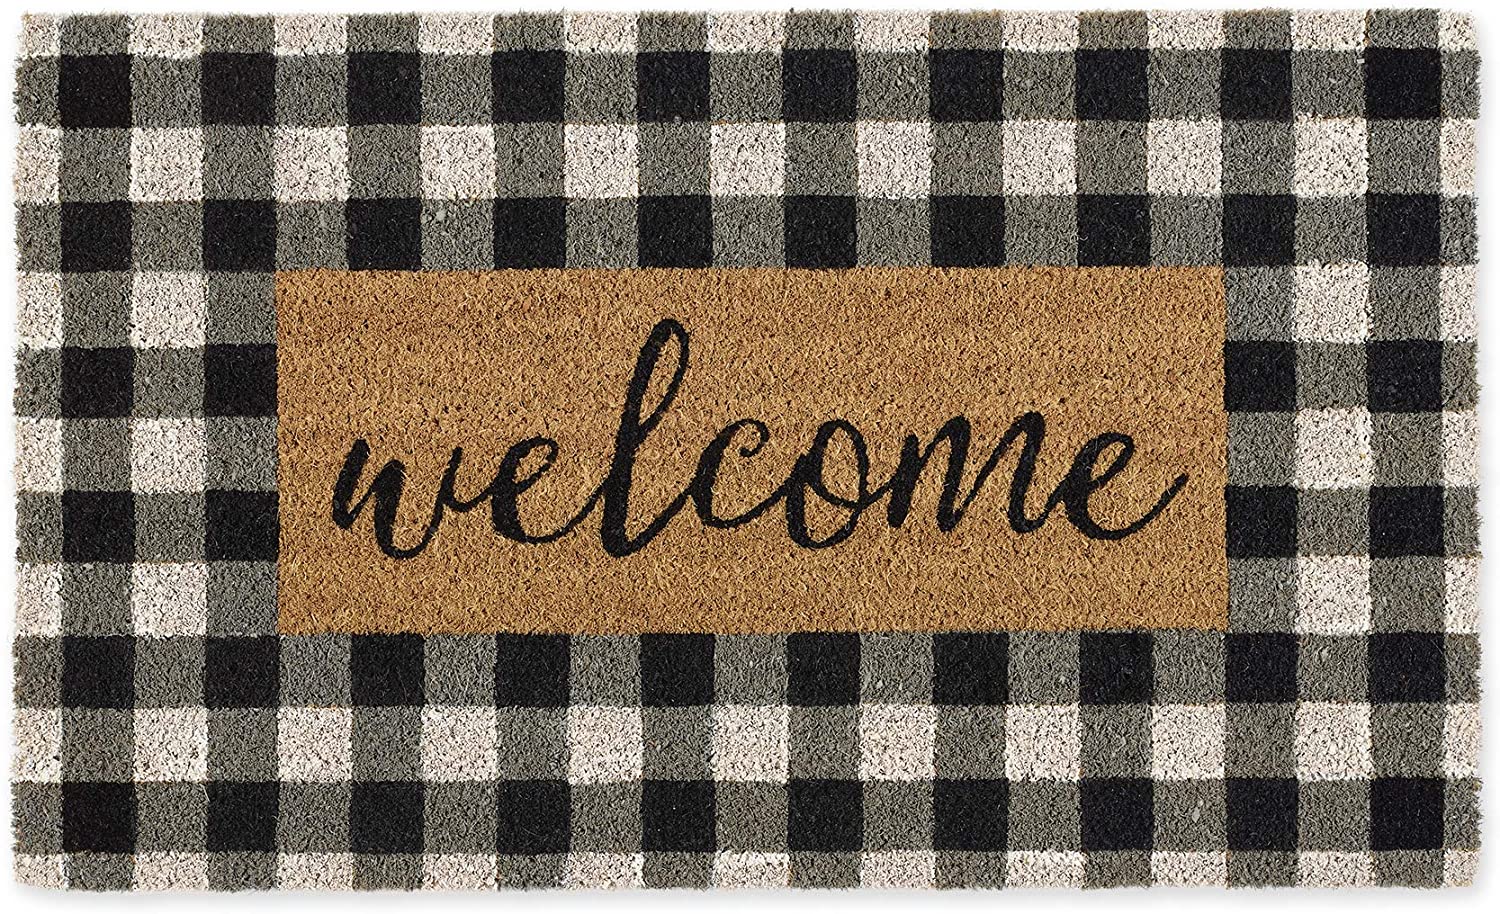 Welcome Front Door Mat Carpet Flannel Fabric Suede Anti-Slip Floor